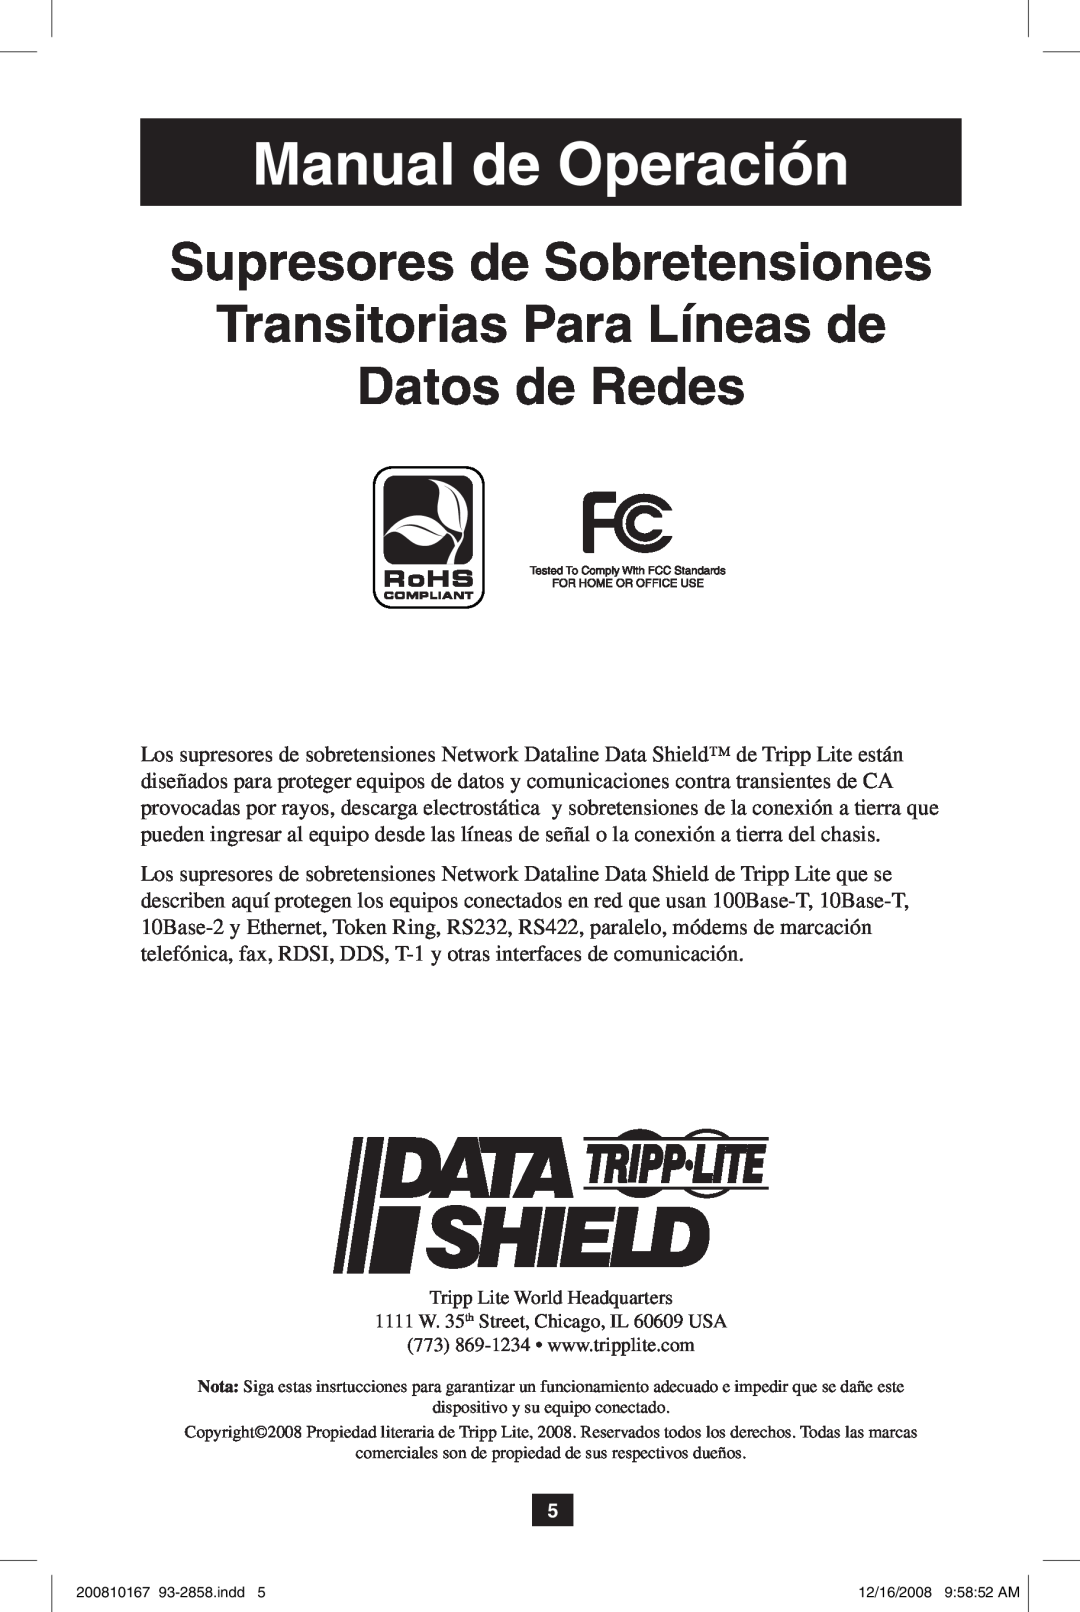 Tripp Lite Data Shield Manual de Operación, Supresores de Sobretensiones Transitorias Para Líneas de, Datos de Redes 